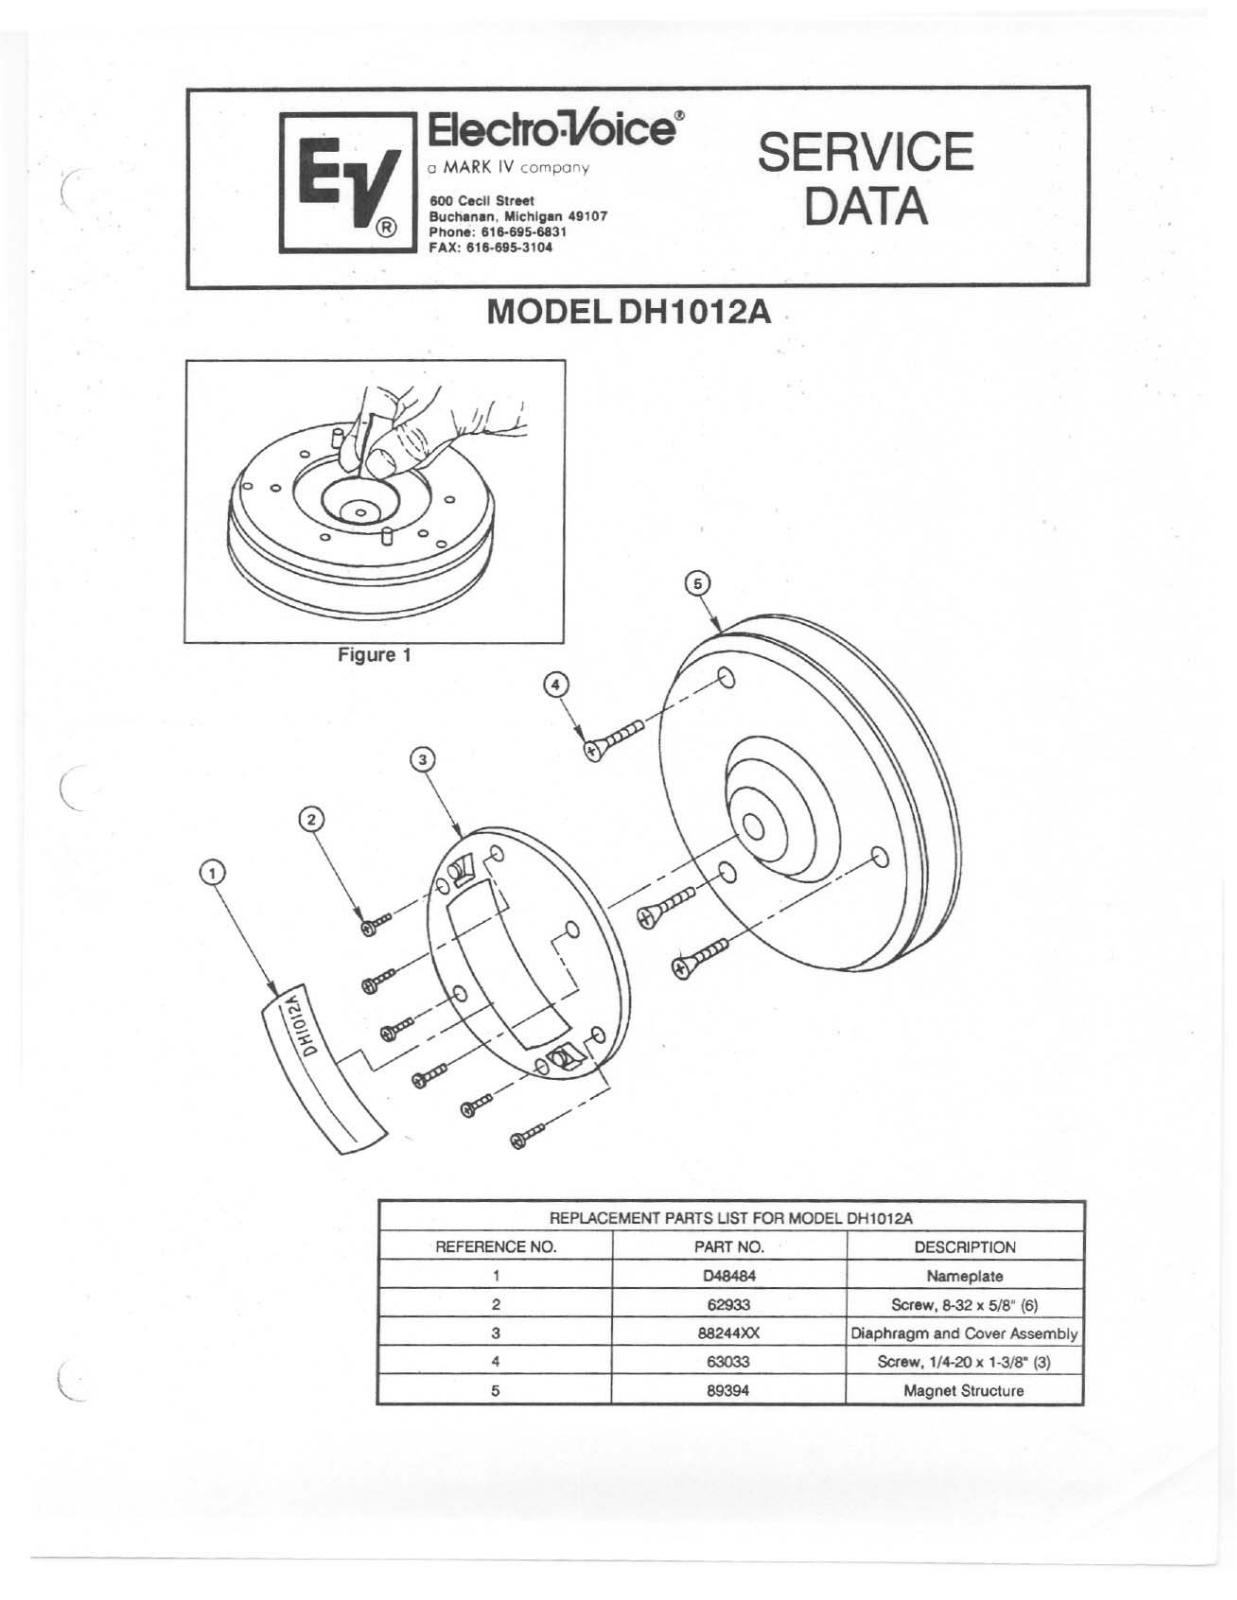 Electro-voice DH1012A User Manual